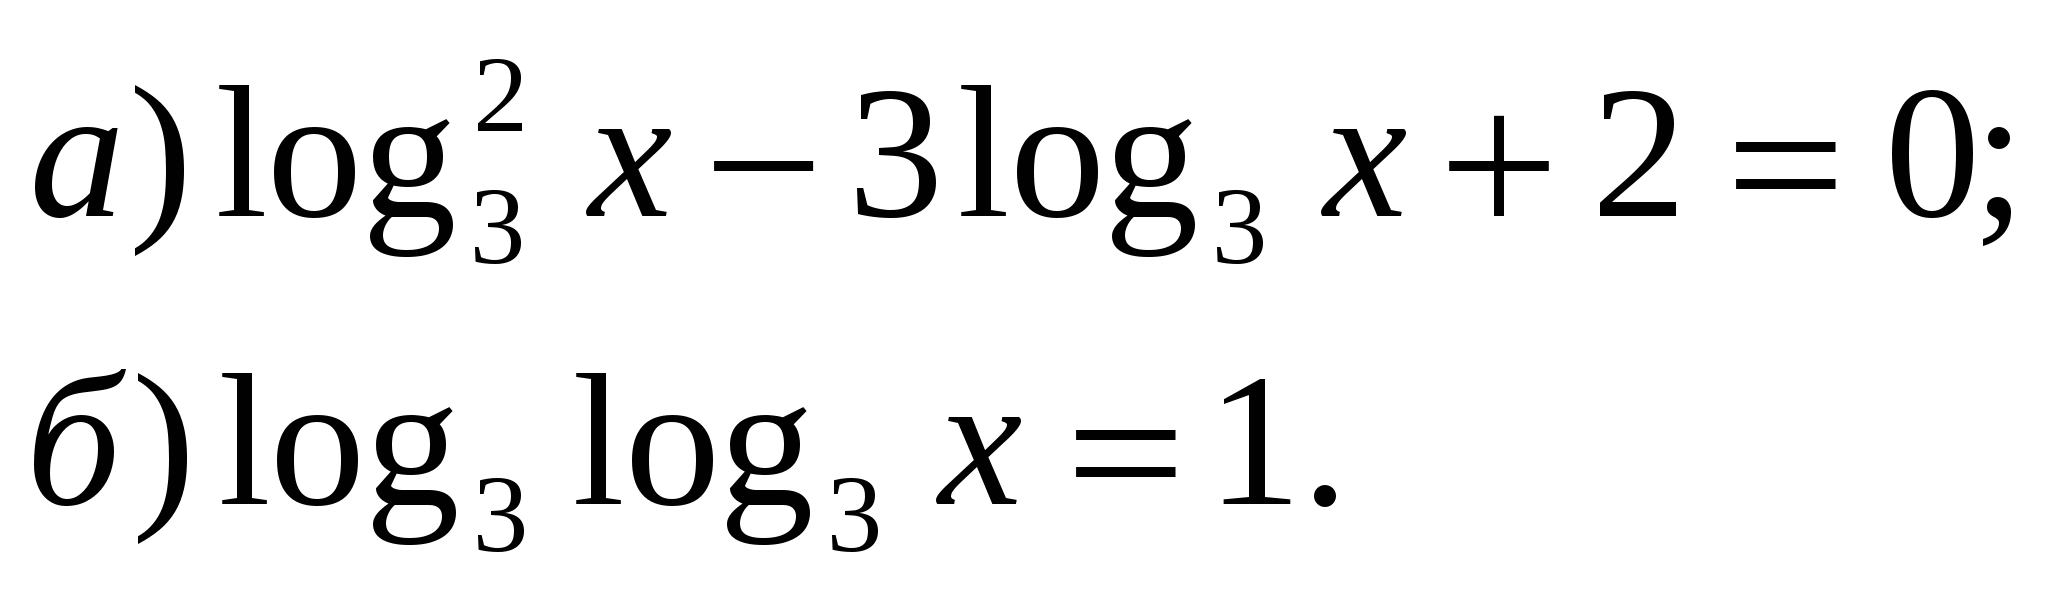 Логарифмические уравнения и неравенства, 10 класс